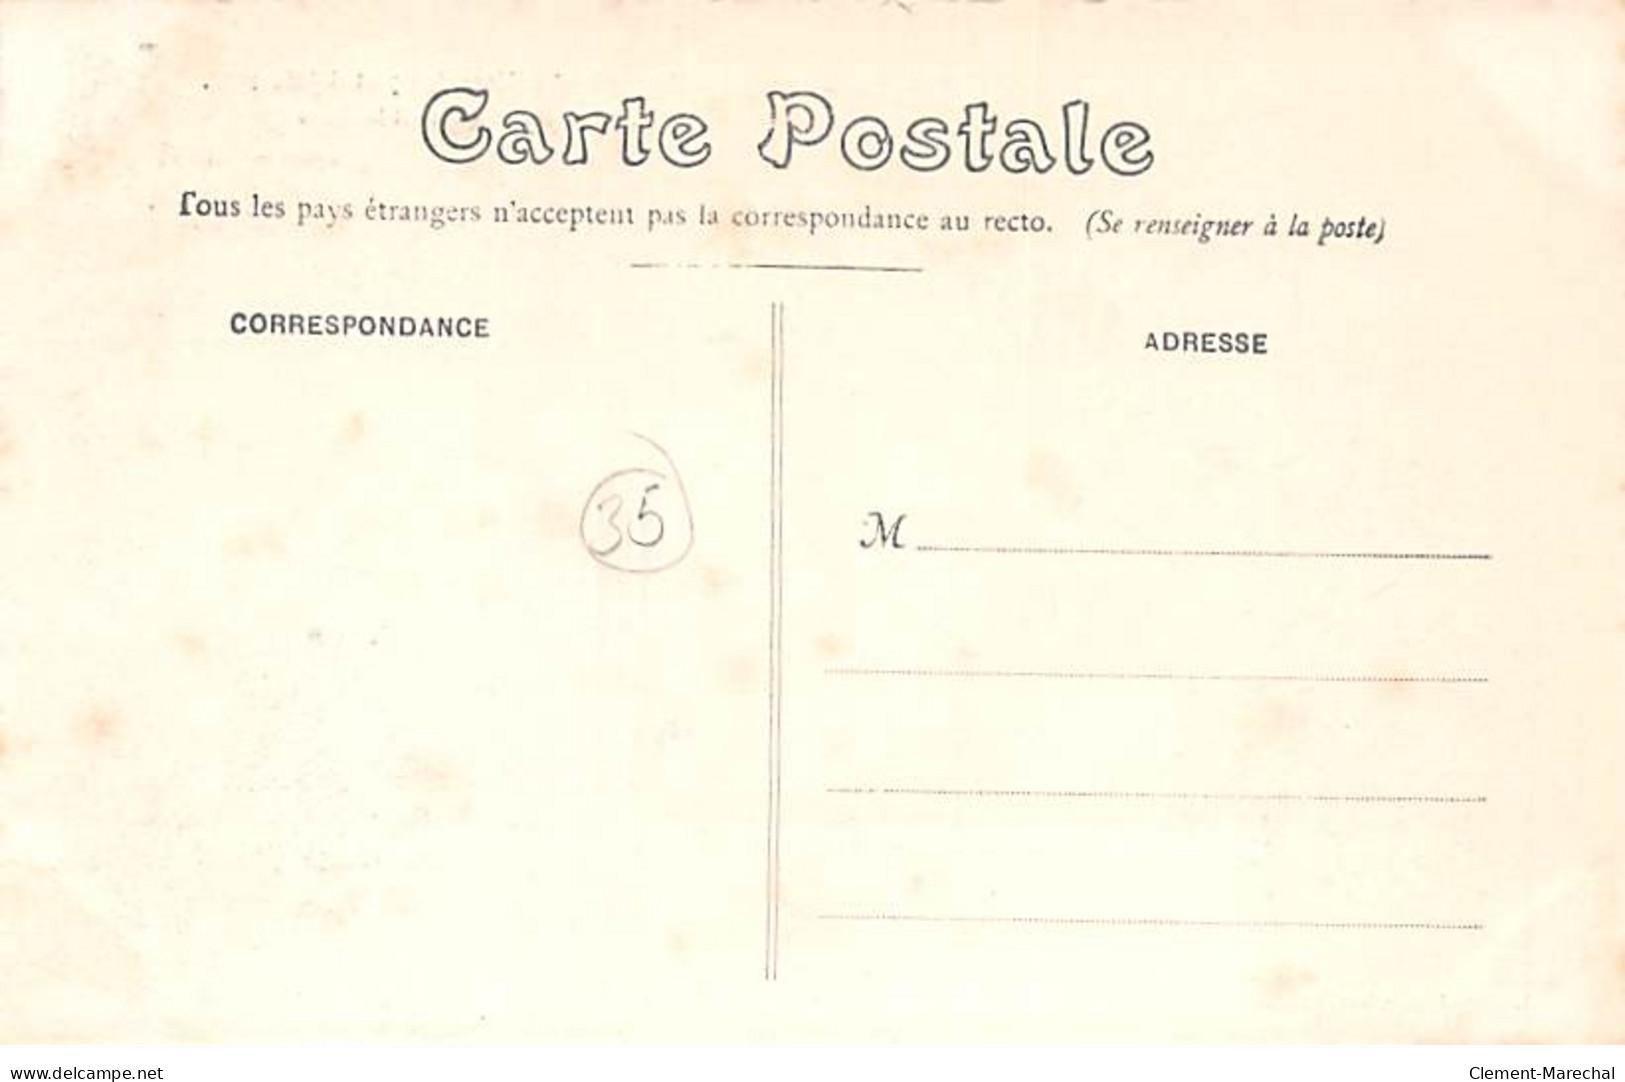 RENNES - Souvenir Des Fêtes Des 7 Et 8 Juin 1908 - Le Cortège Ministériel Quittant La Gare - Très Bon état - Rennes